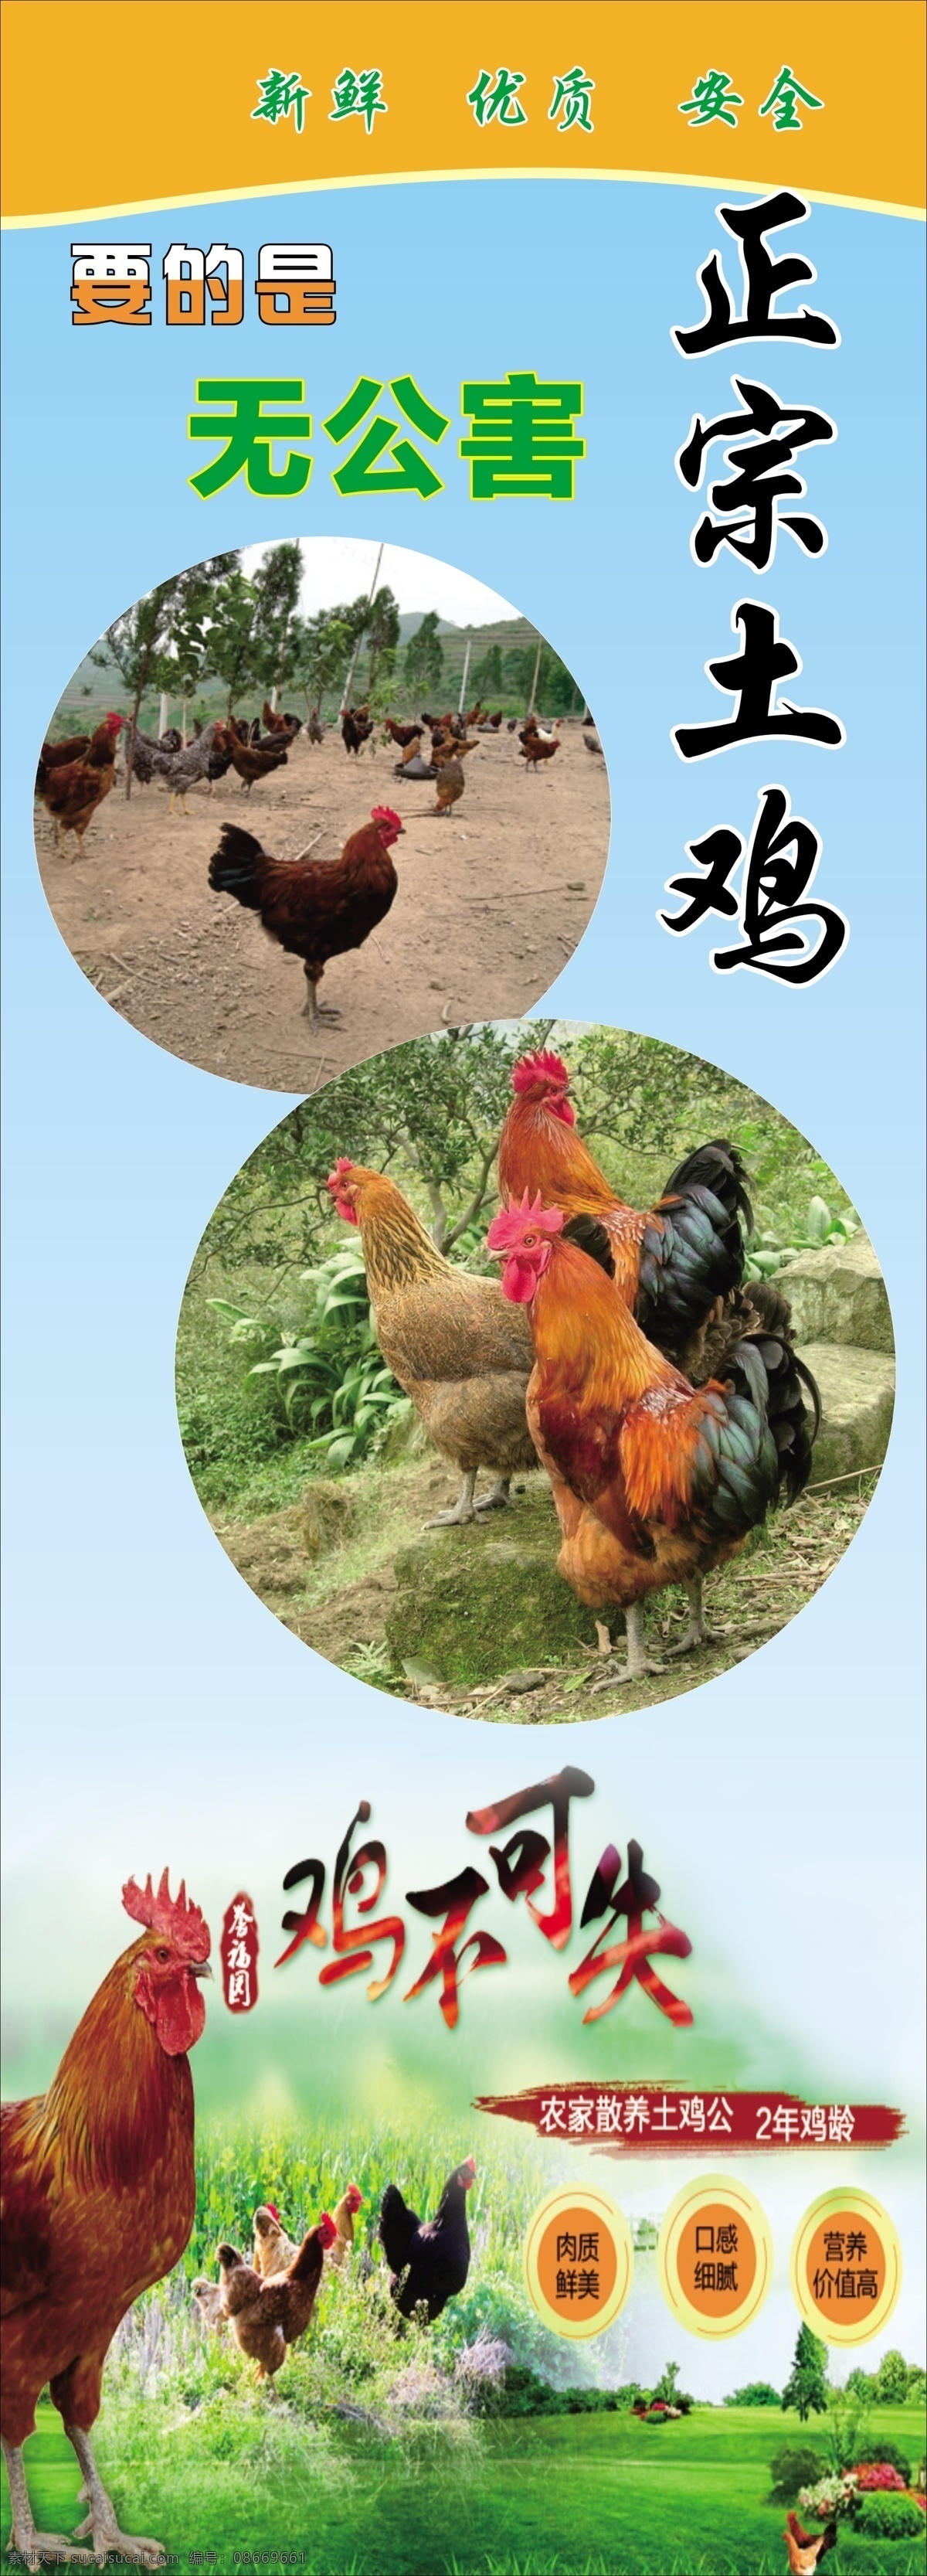 土鸡图片 鸡 公鸡 展架 展板 散养 文化艺术 传统文化